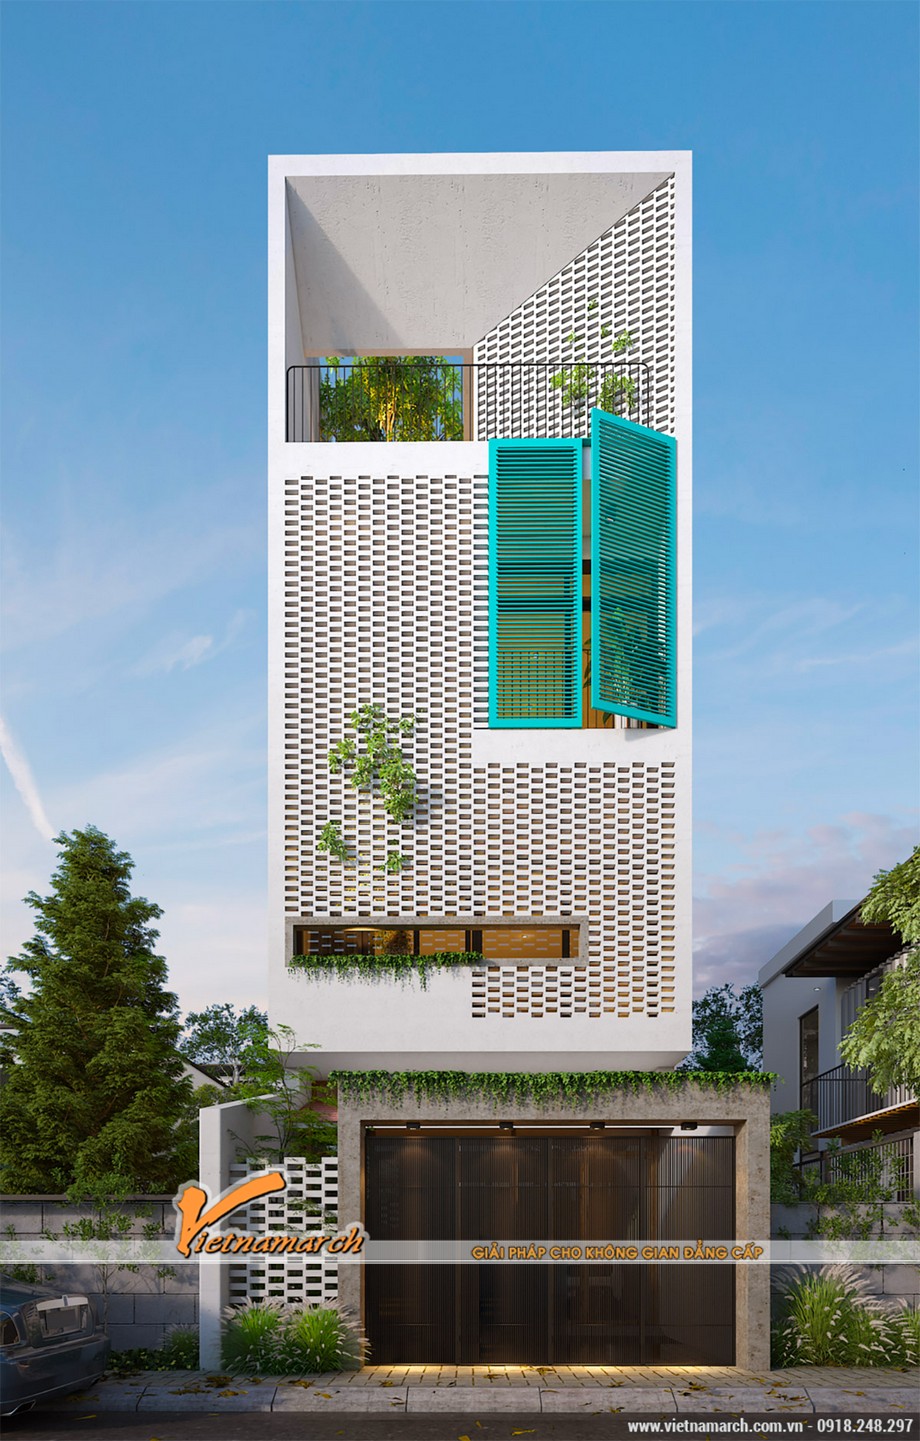 5 mẫu nhà phố 3 tầng hiện đại được thiết kế lỗ thông gió và đón ánh nắng vô cùng độc đáo > Mẫu 1: thiết kế thoáng mở với tường “tổ ong”